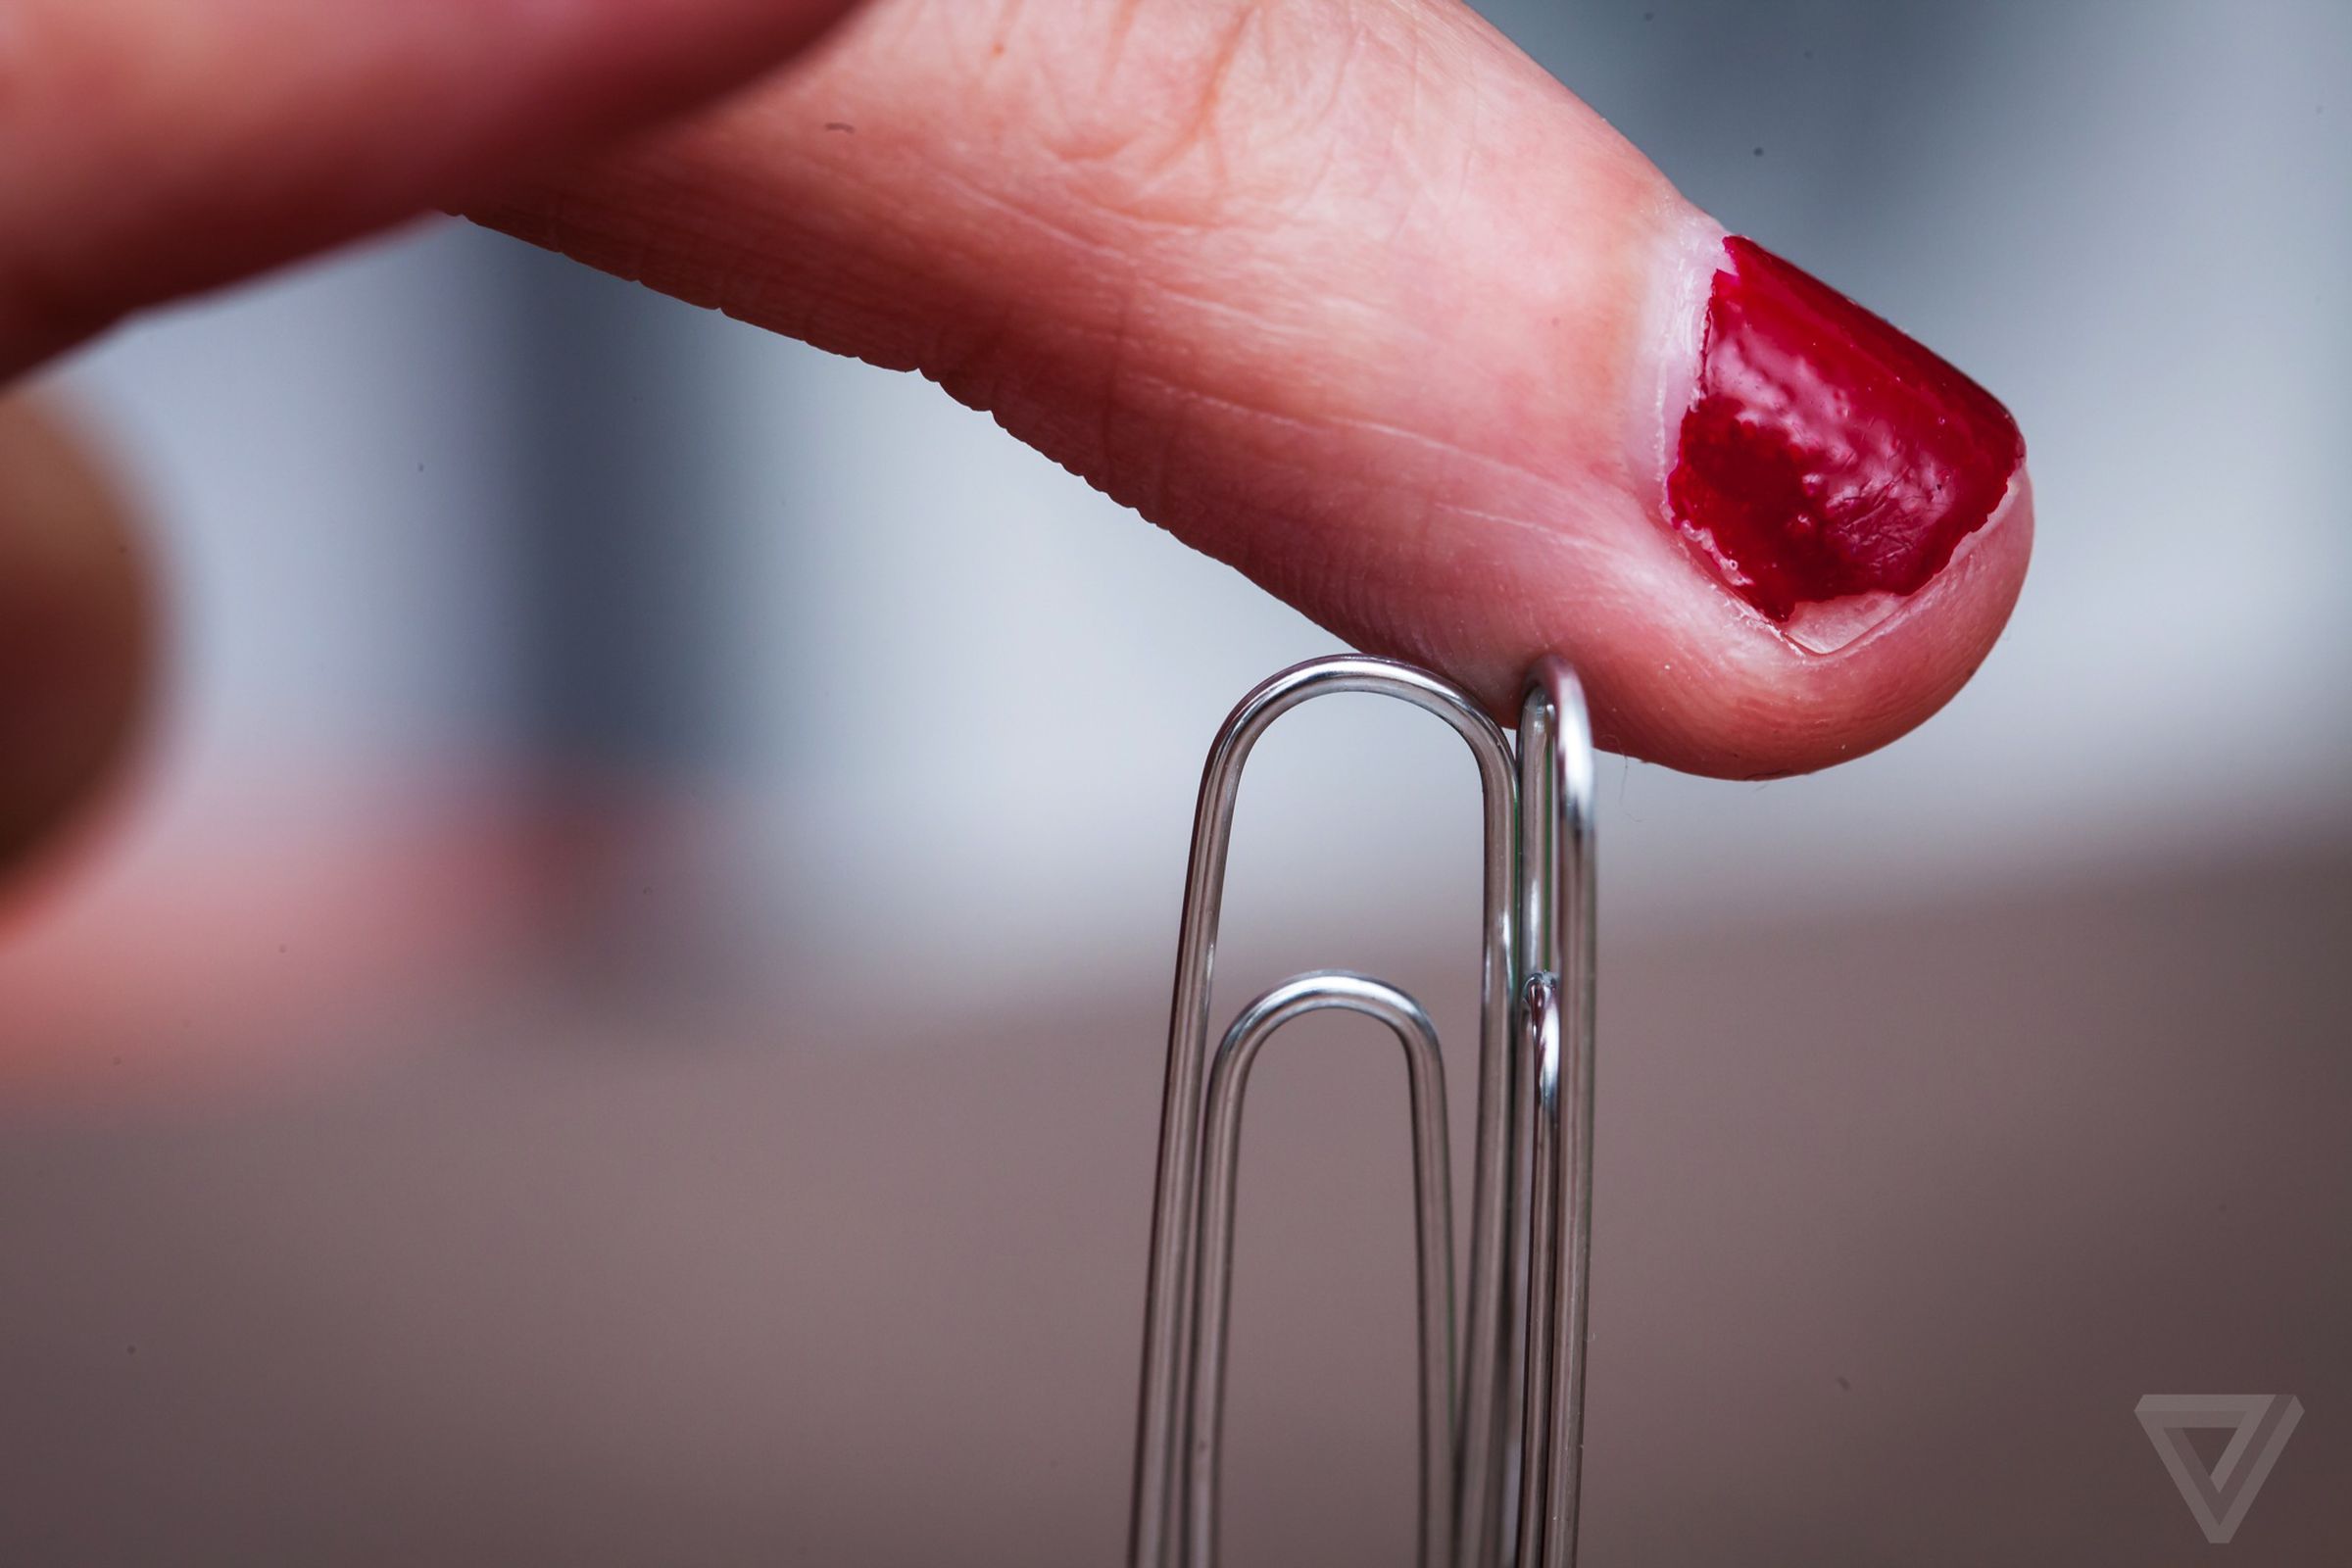 Magnet finger implant